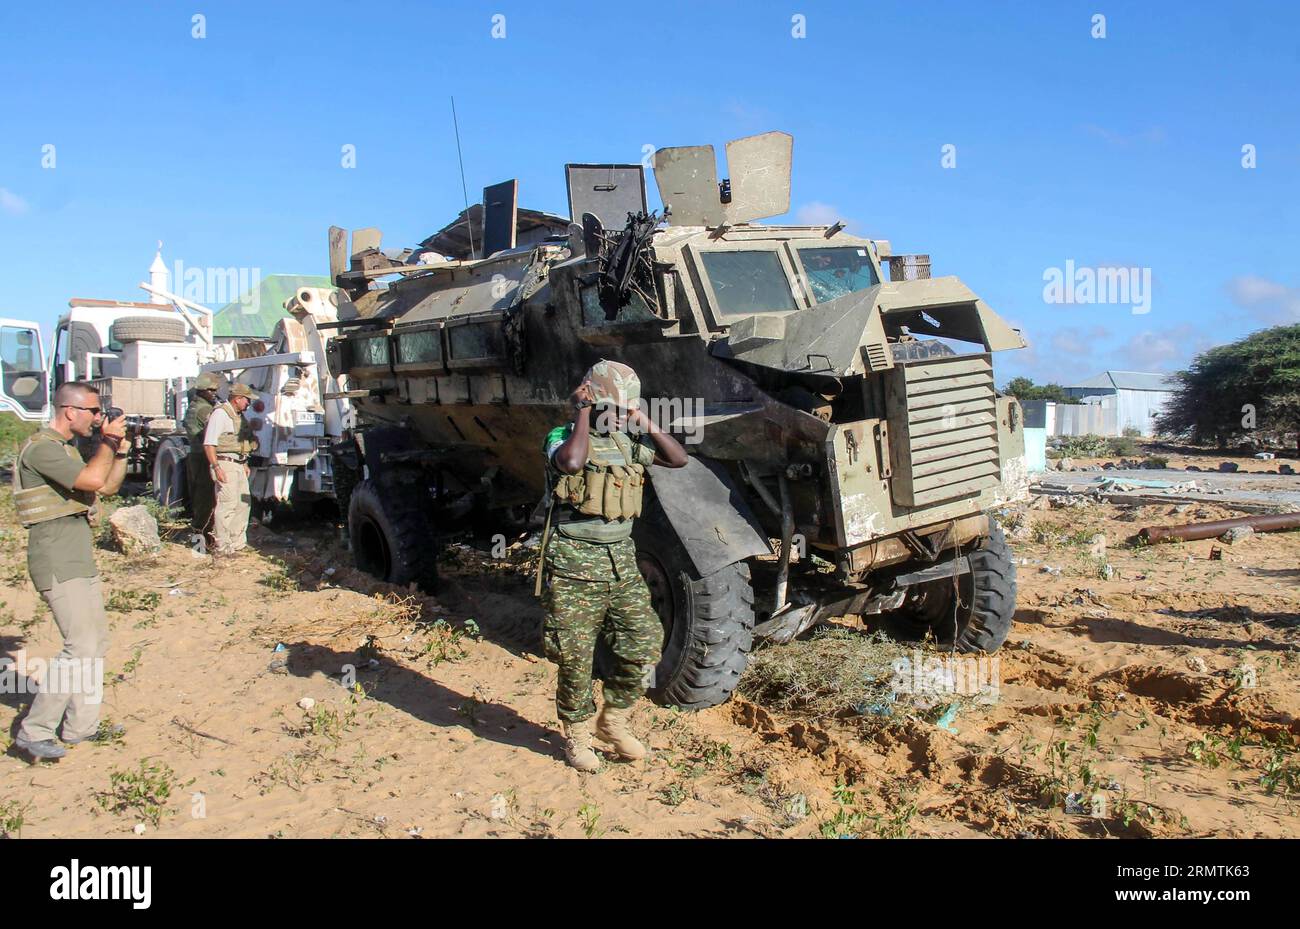 (140908) -- MOGADISCIO, 8 septembre 2014 -- des enquêteurs vérifient le site d'une bombe suicide ciblant un convoi de la Mission de l'Union africaine en Somalie (AMISOM) sur une route reliant Mogadiscio à Afgooye, une petite ville située à 20 km à l'ouest de la capitale, le 8 septembre 2014. Le groupe islamiste Al-Shabaab a revendiqué lundi la responsabilité de deux attentats suicides à la voiture piégée qui ont tué au moins 12 personnes en Somalie, ont déclaré des sources policières. L'autre attentat suicide à la bombe a touché un poste de contrôle militaire à la périphérie de Mogadiscio lundi, blessant deux personnes, dont un responsable du gouvernement local.) SOMALIE-MOGADISCIO-SUICIDE BOM Banque D'Images